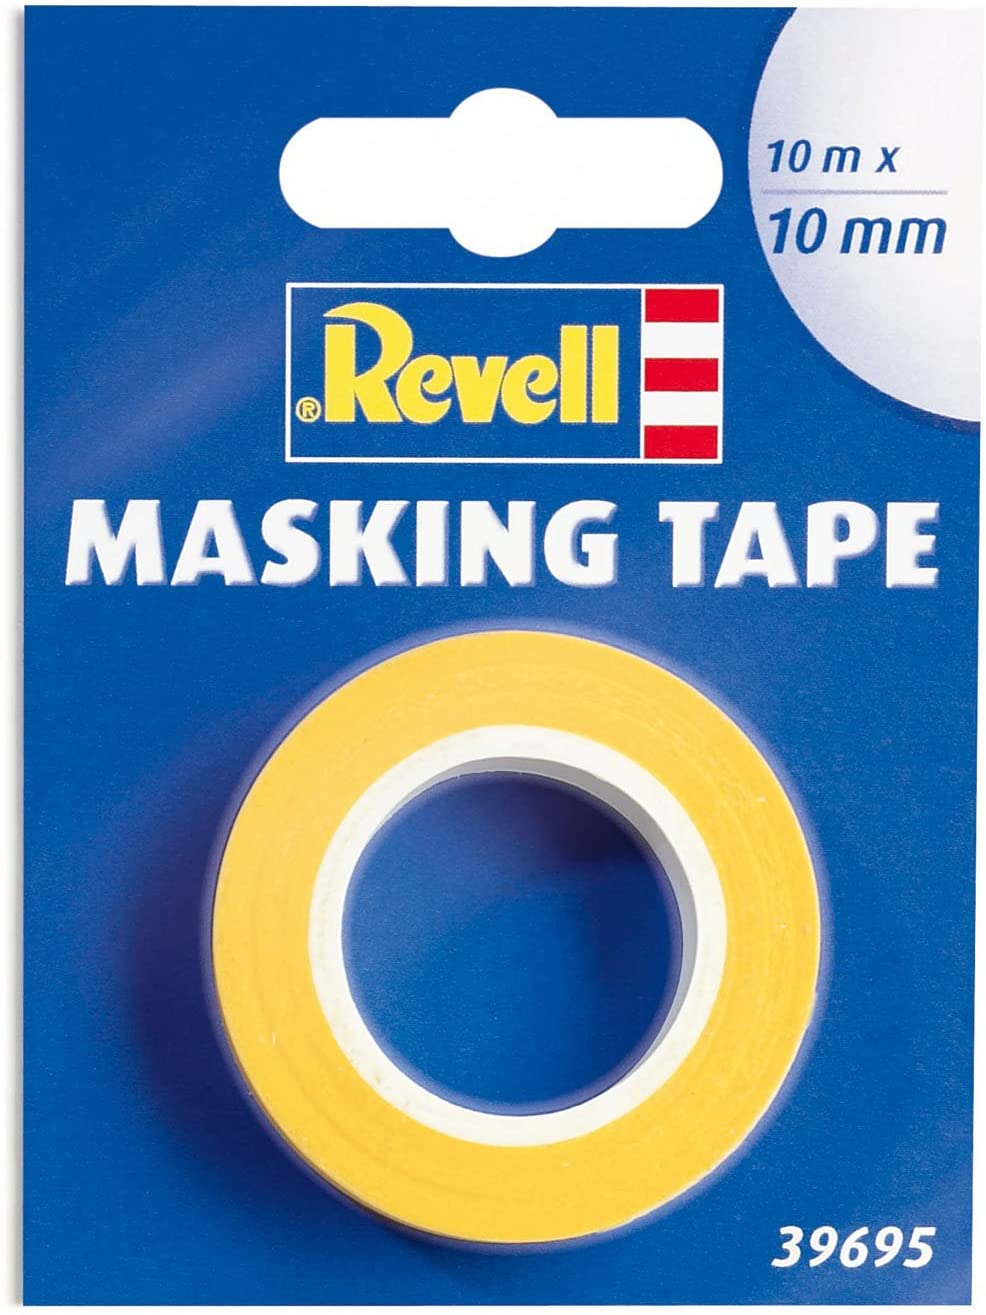 Revell Masking Tape 10m x 10mm 39695